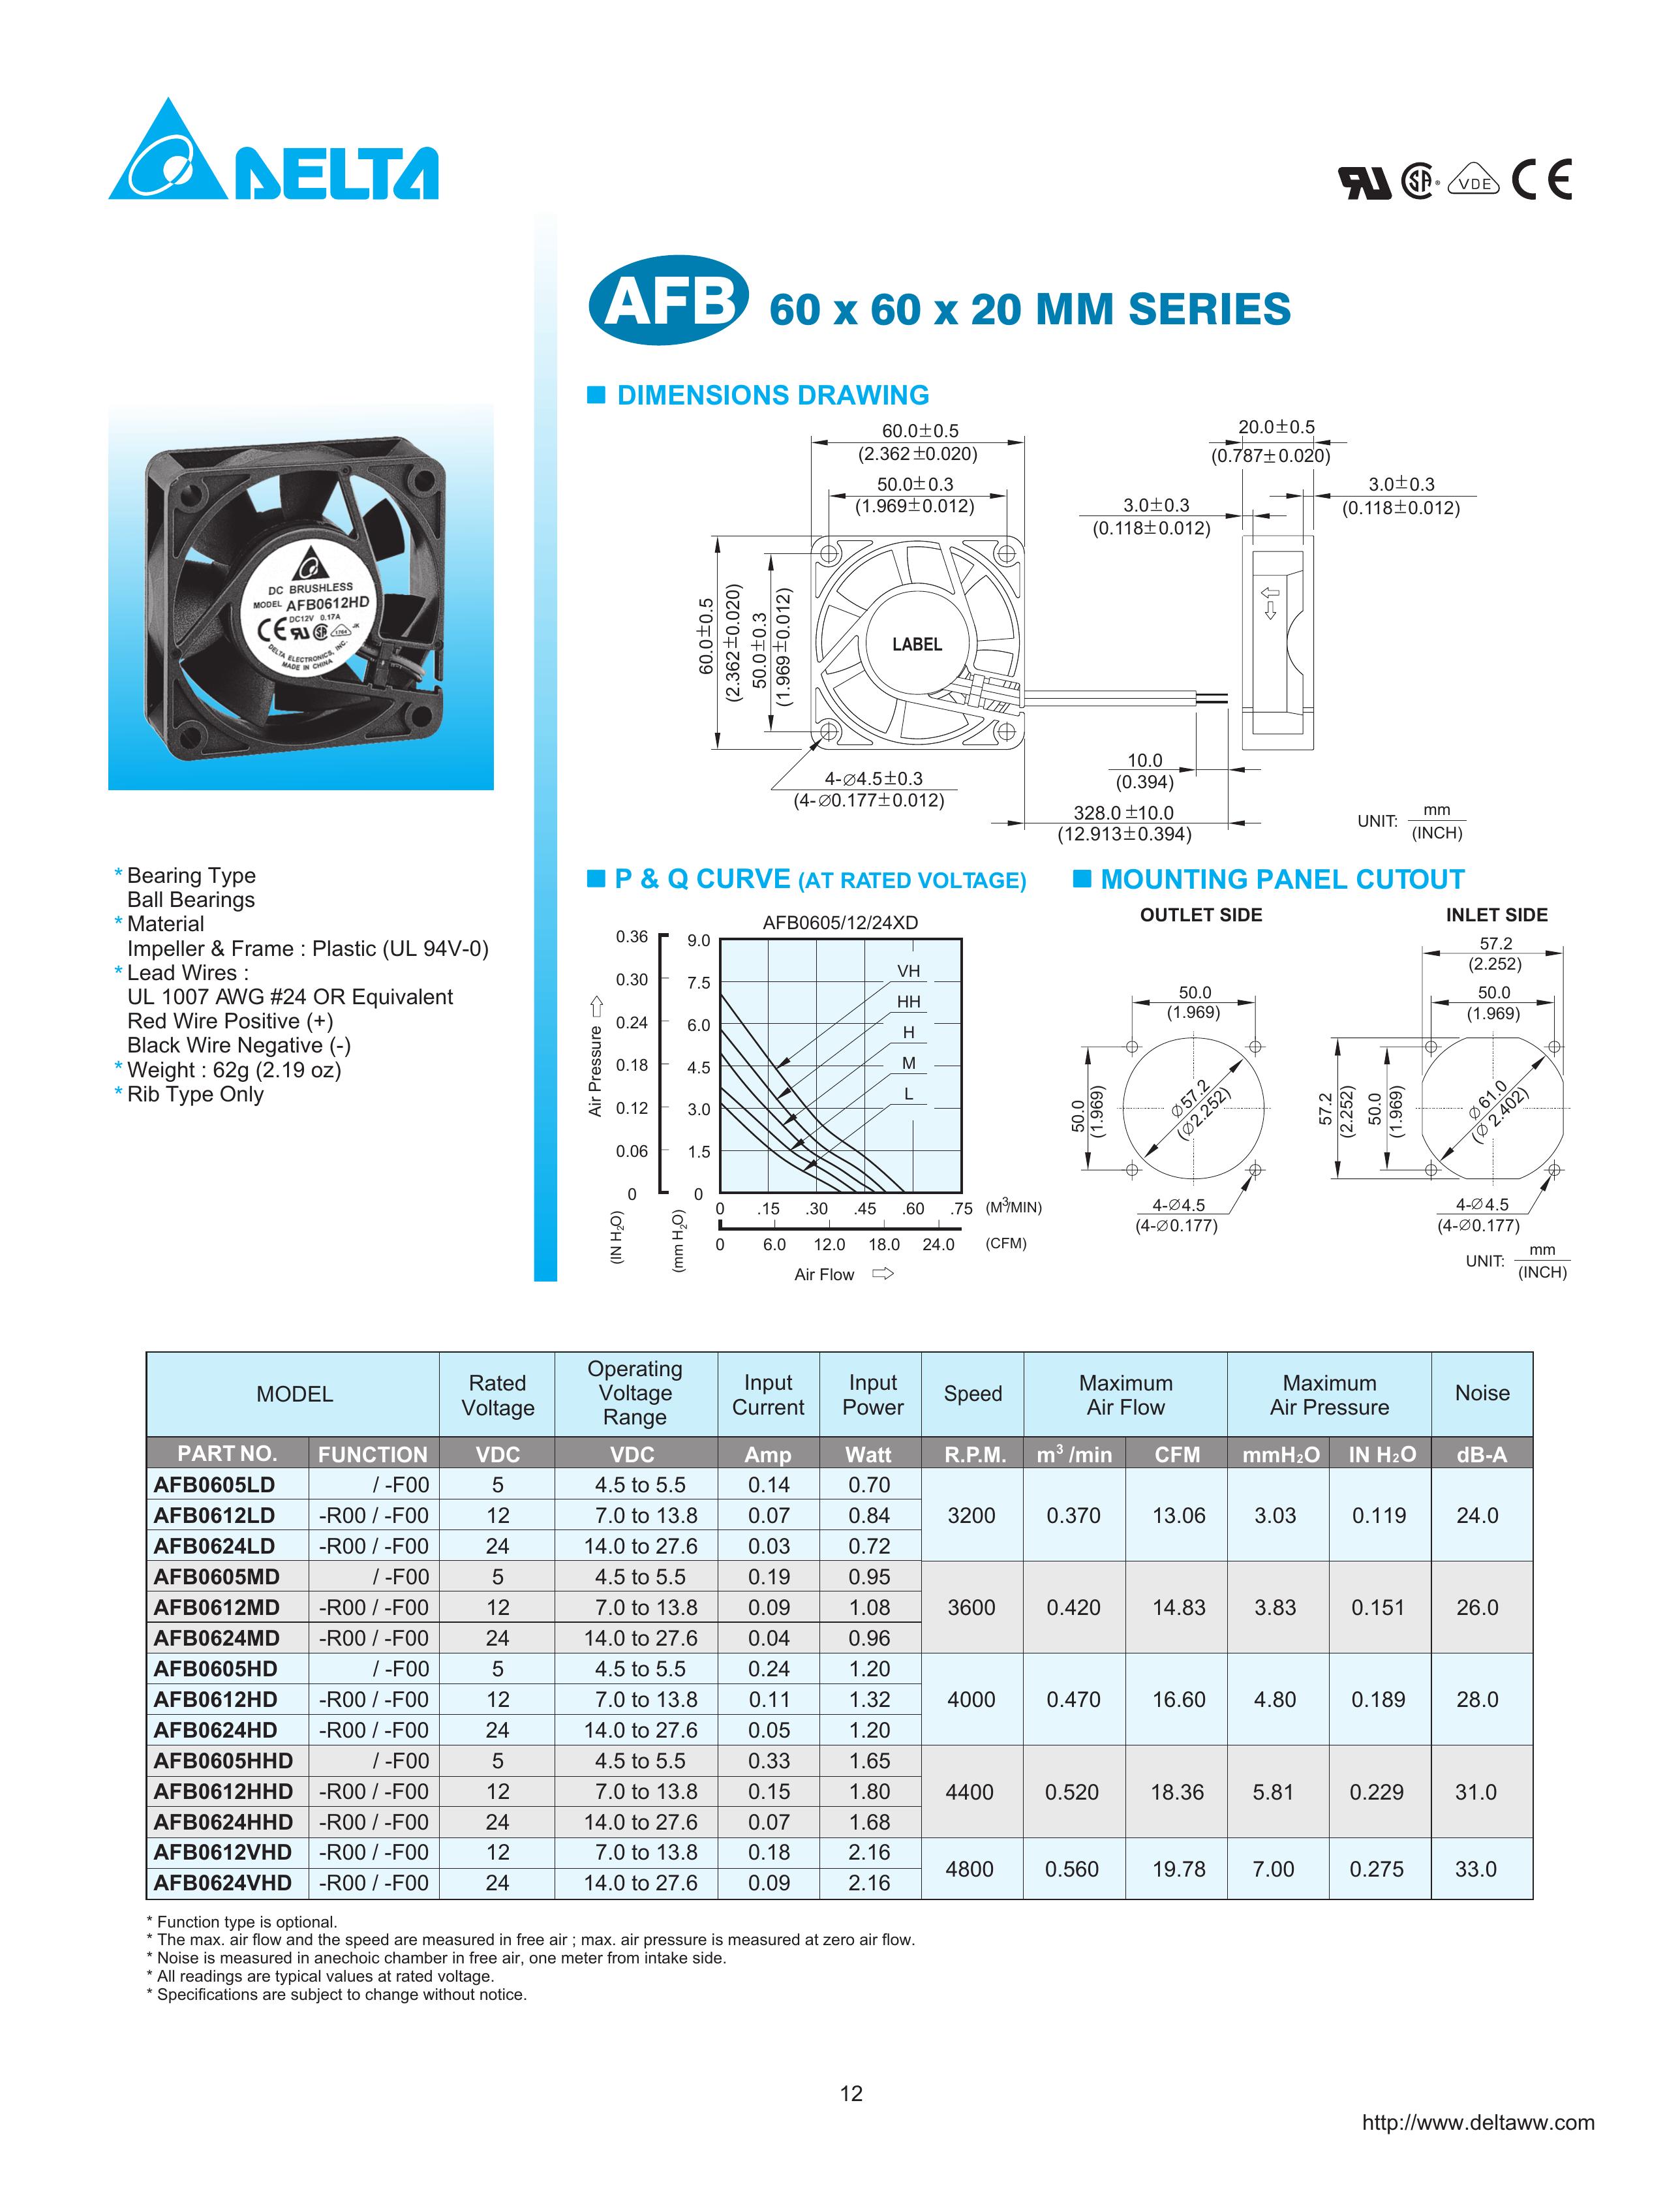 Delta Electronics AFB0624HHD Ventilation Hood User Manual